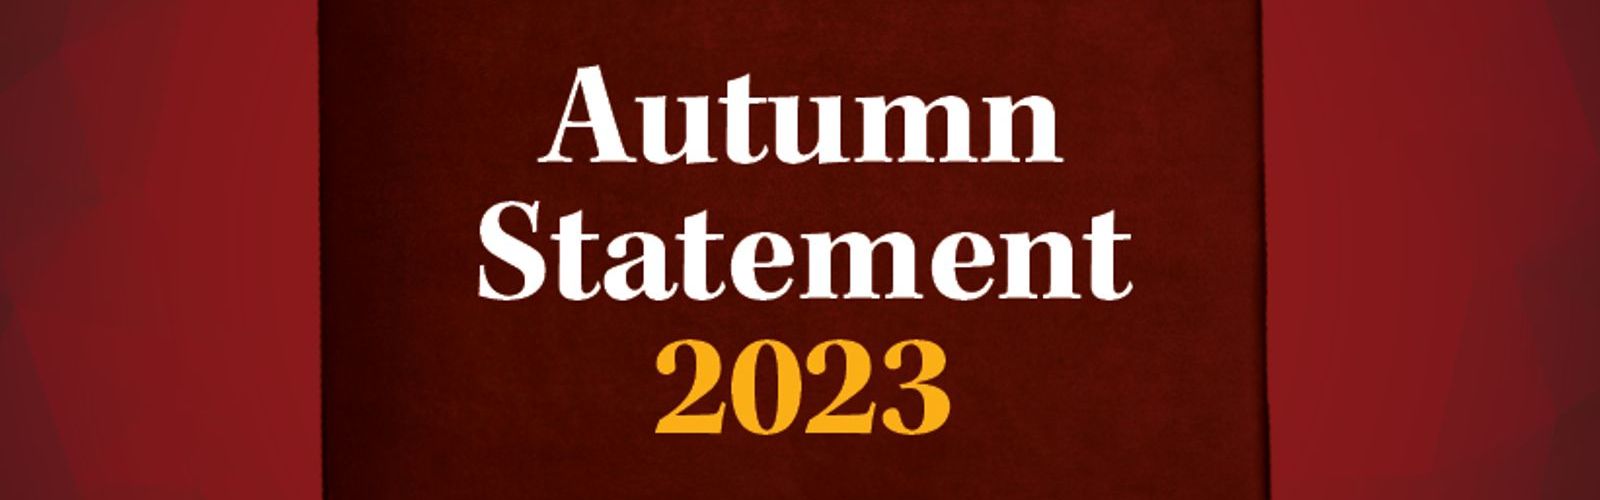 Autumn statement 2023 webinar tile.jpg